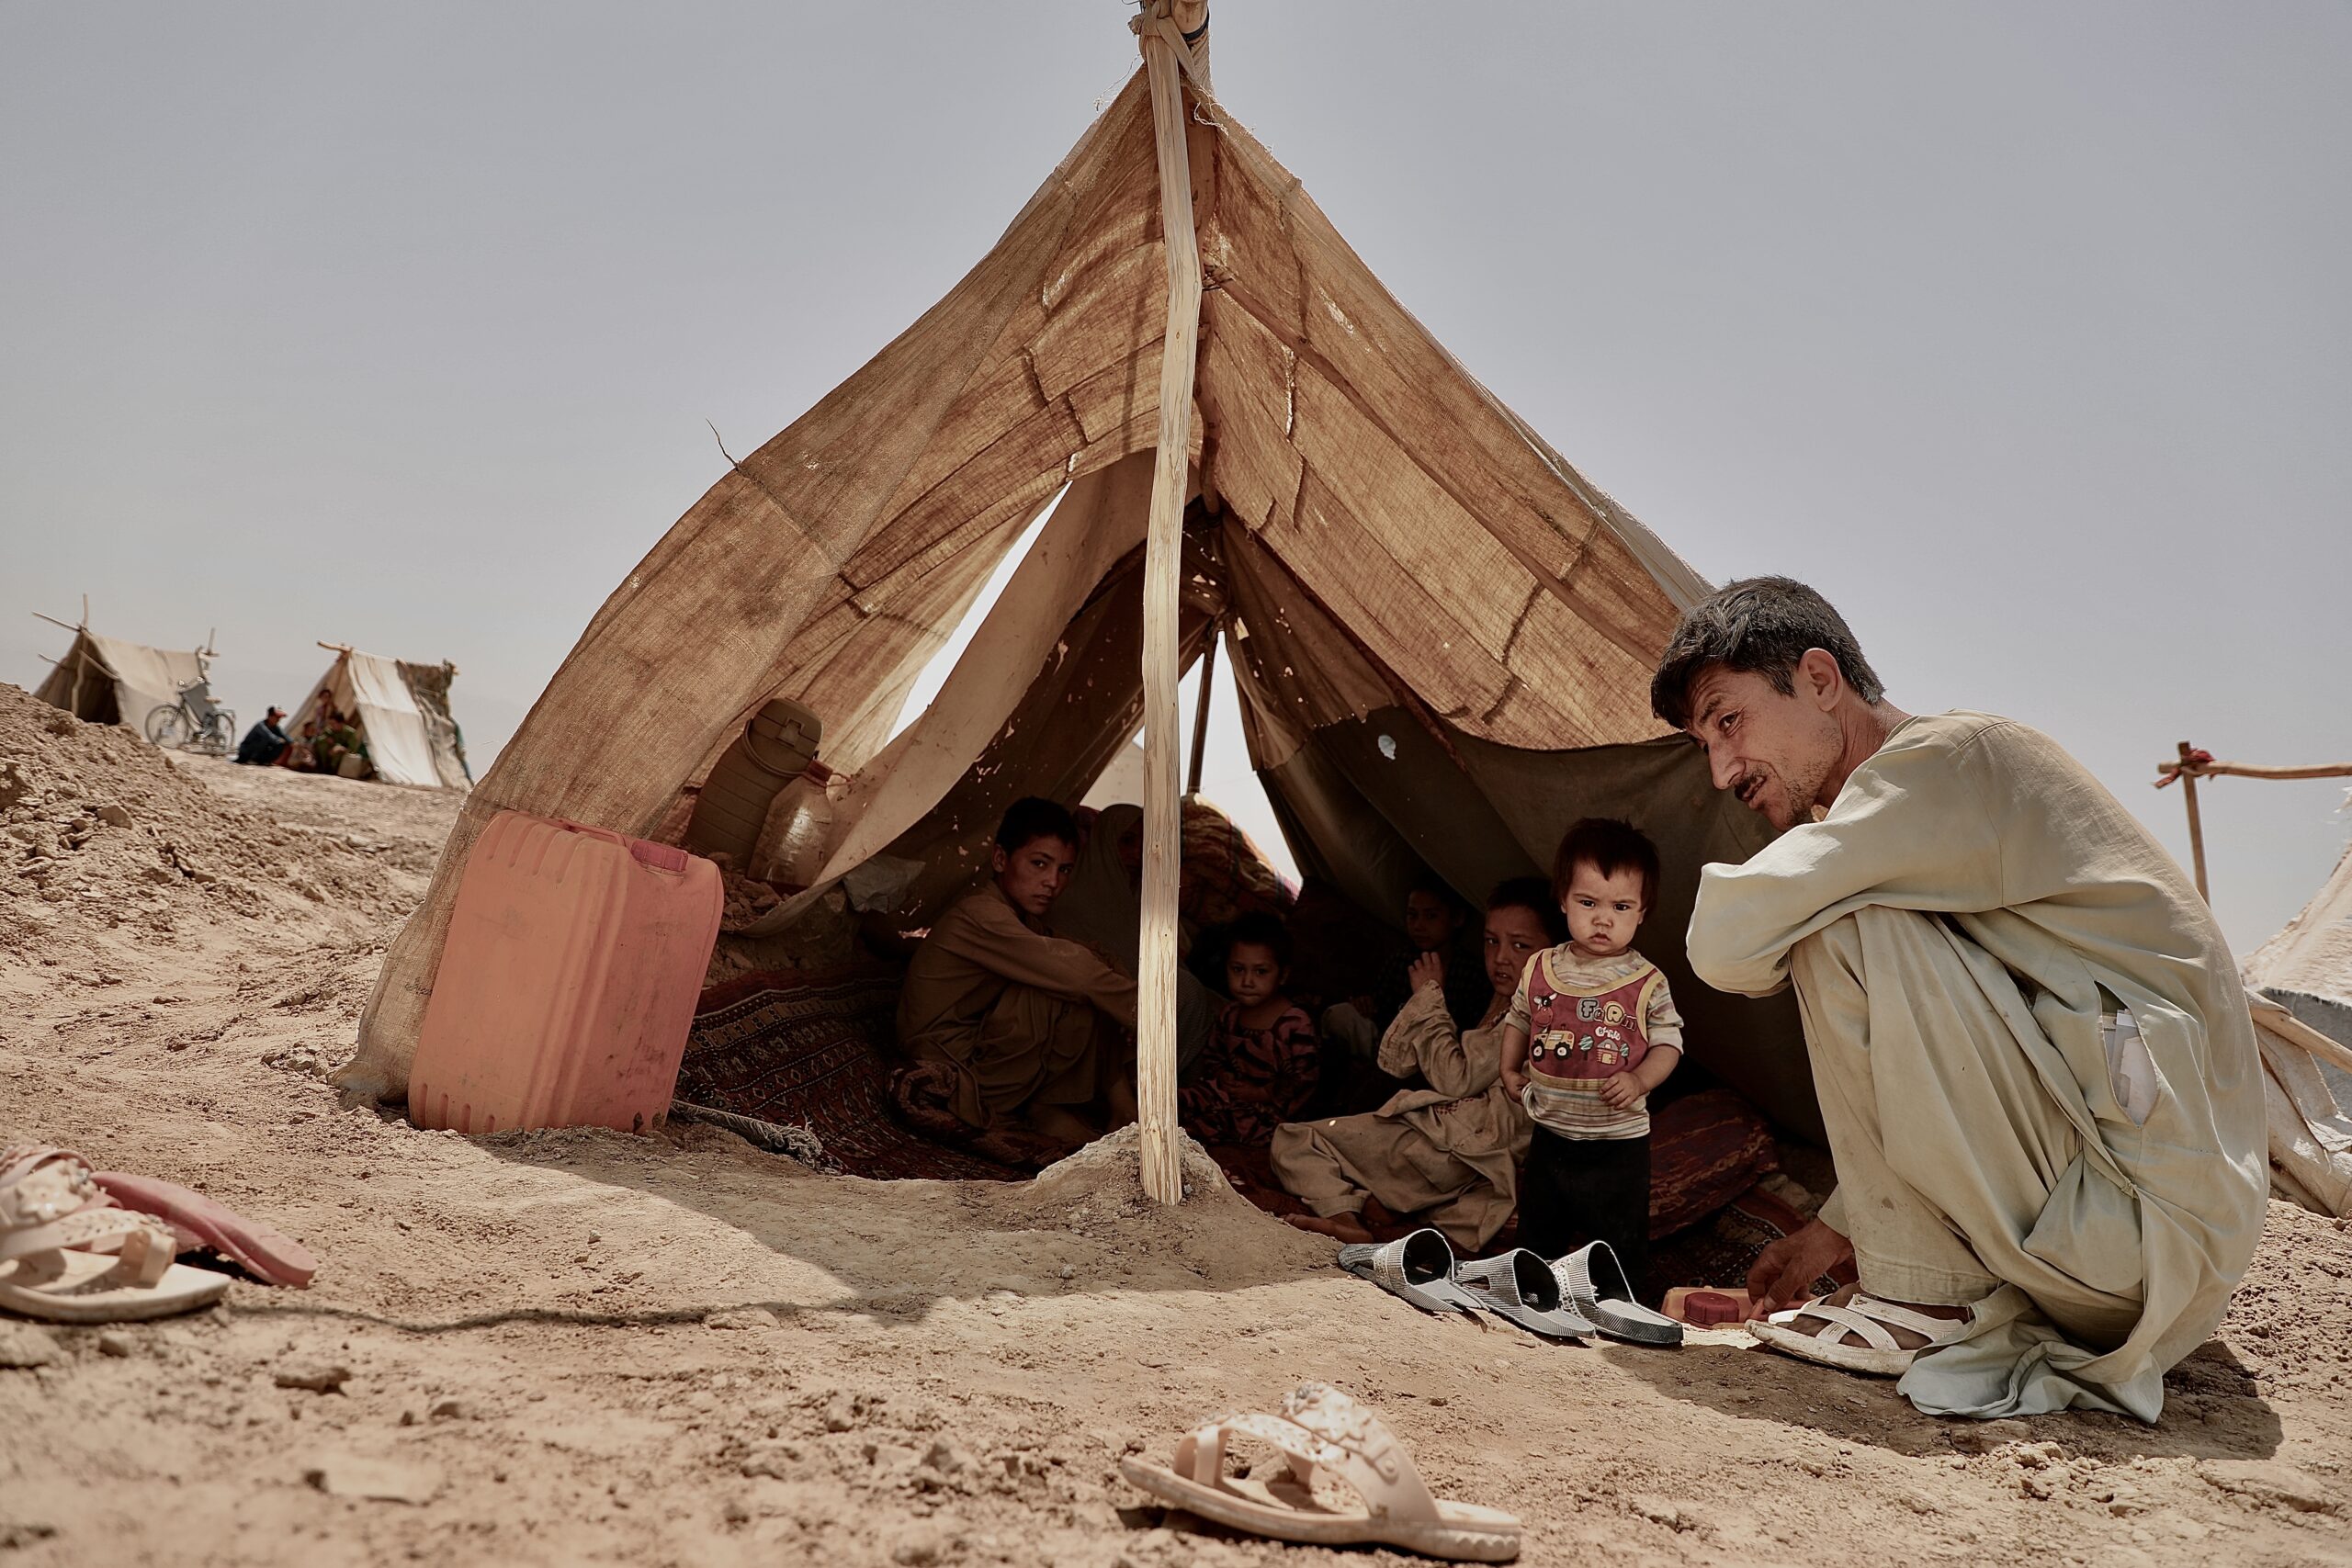 Mohammad Faiz et ses enfants fuient le conflit en Afghanistan. © UNHCR/Edris Lutfi